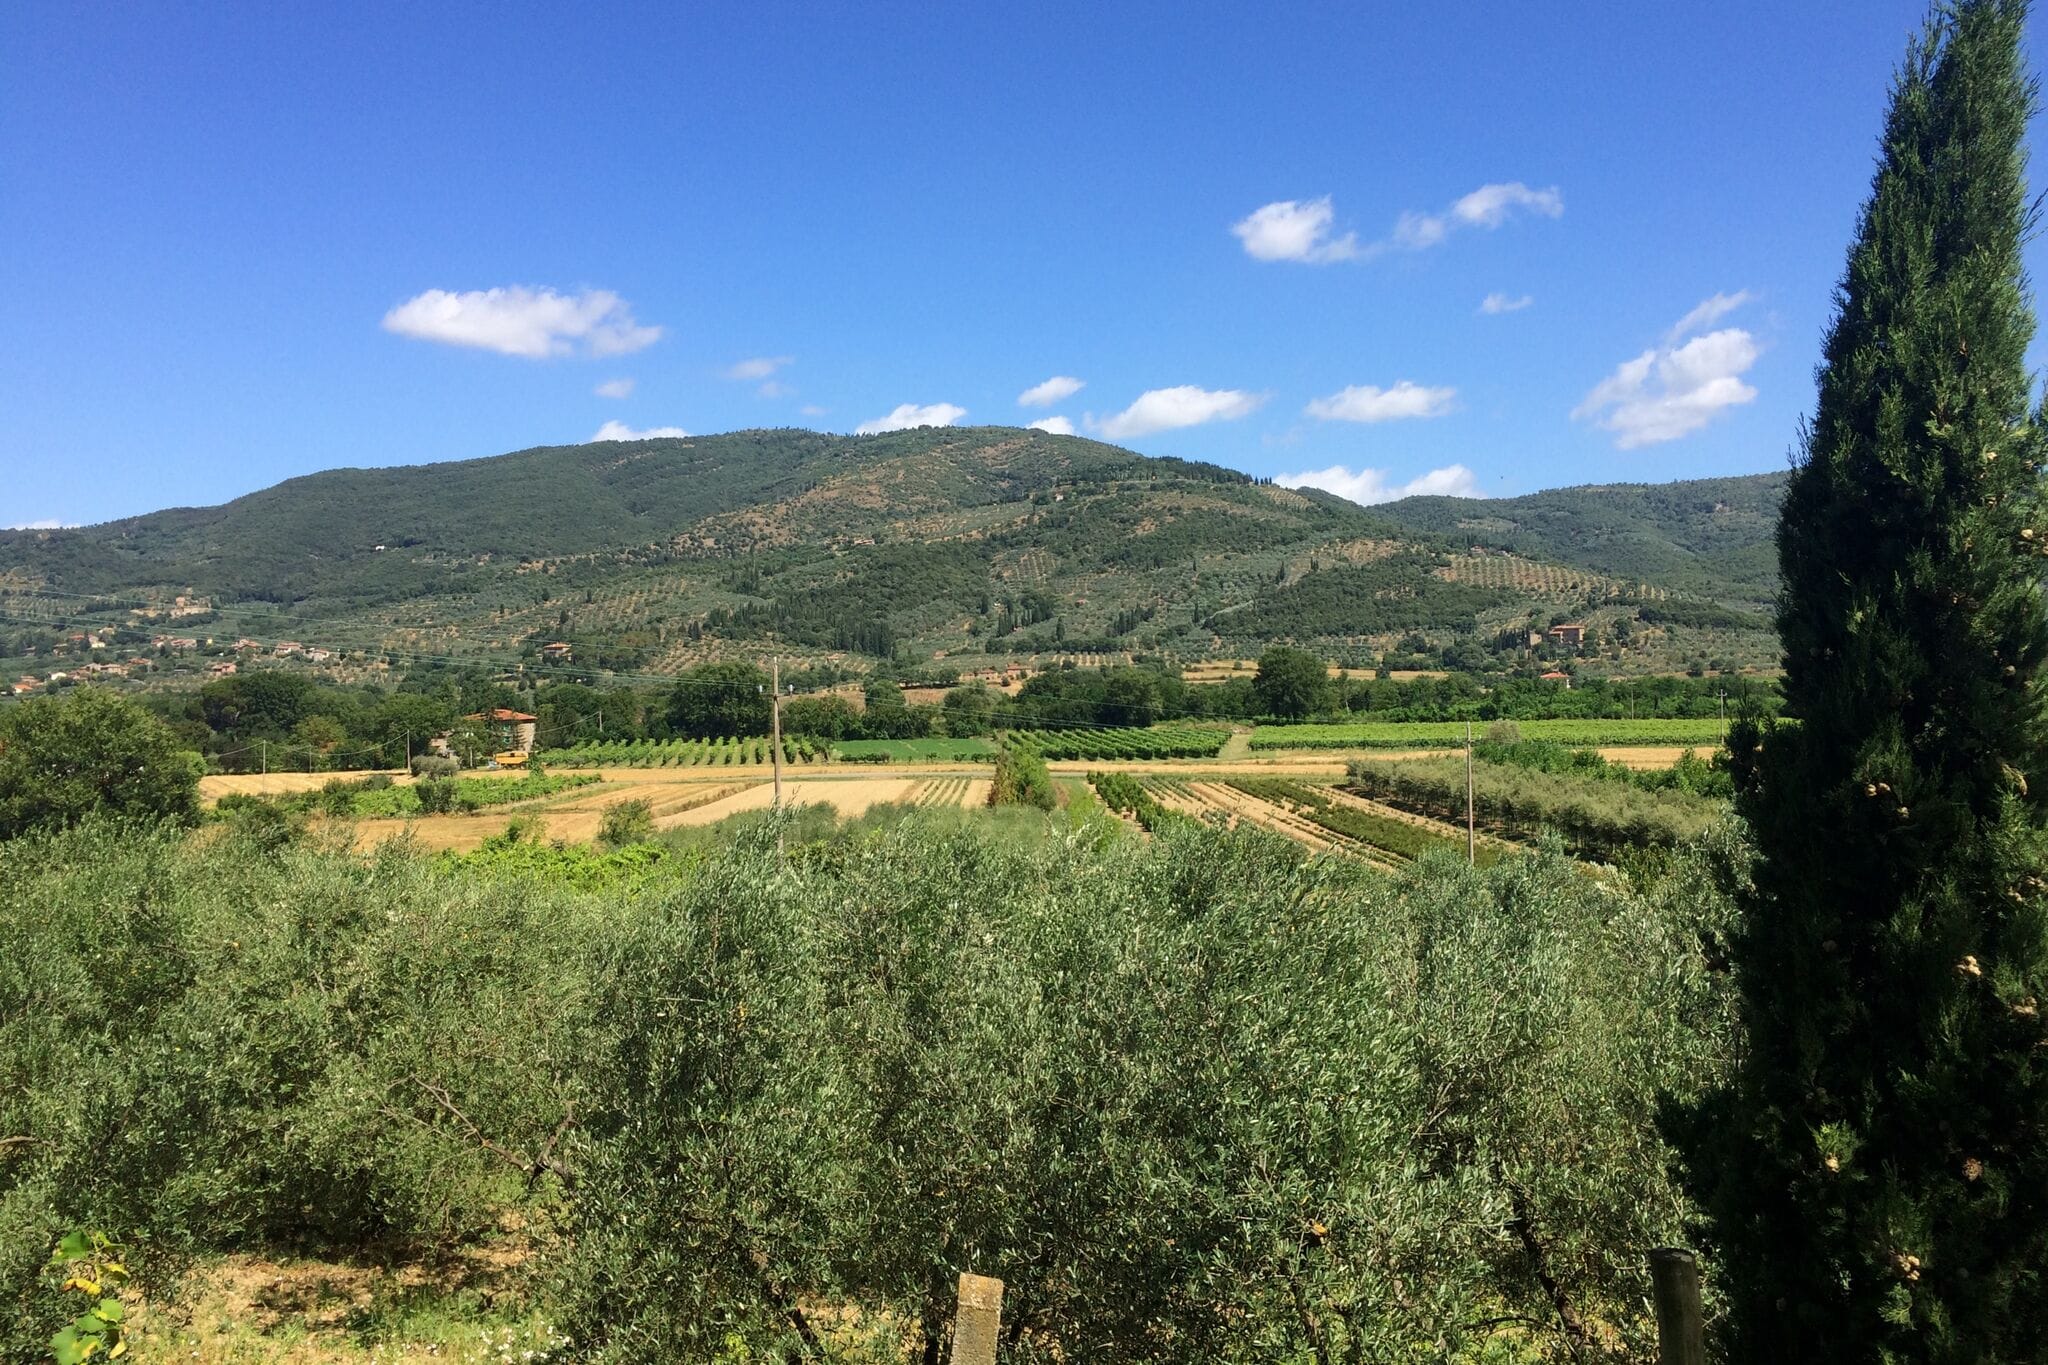 Ruime vakantievilla  in  Castiglion Fiorentino met zwembad op een wijngoed  met  ook olijfboomgaard